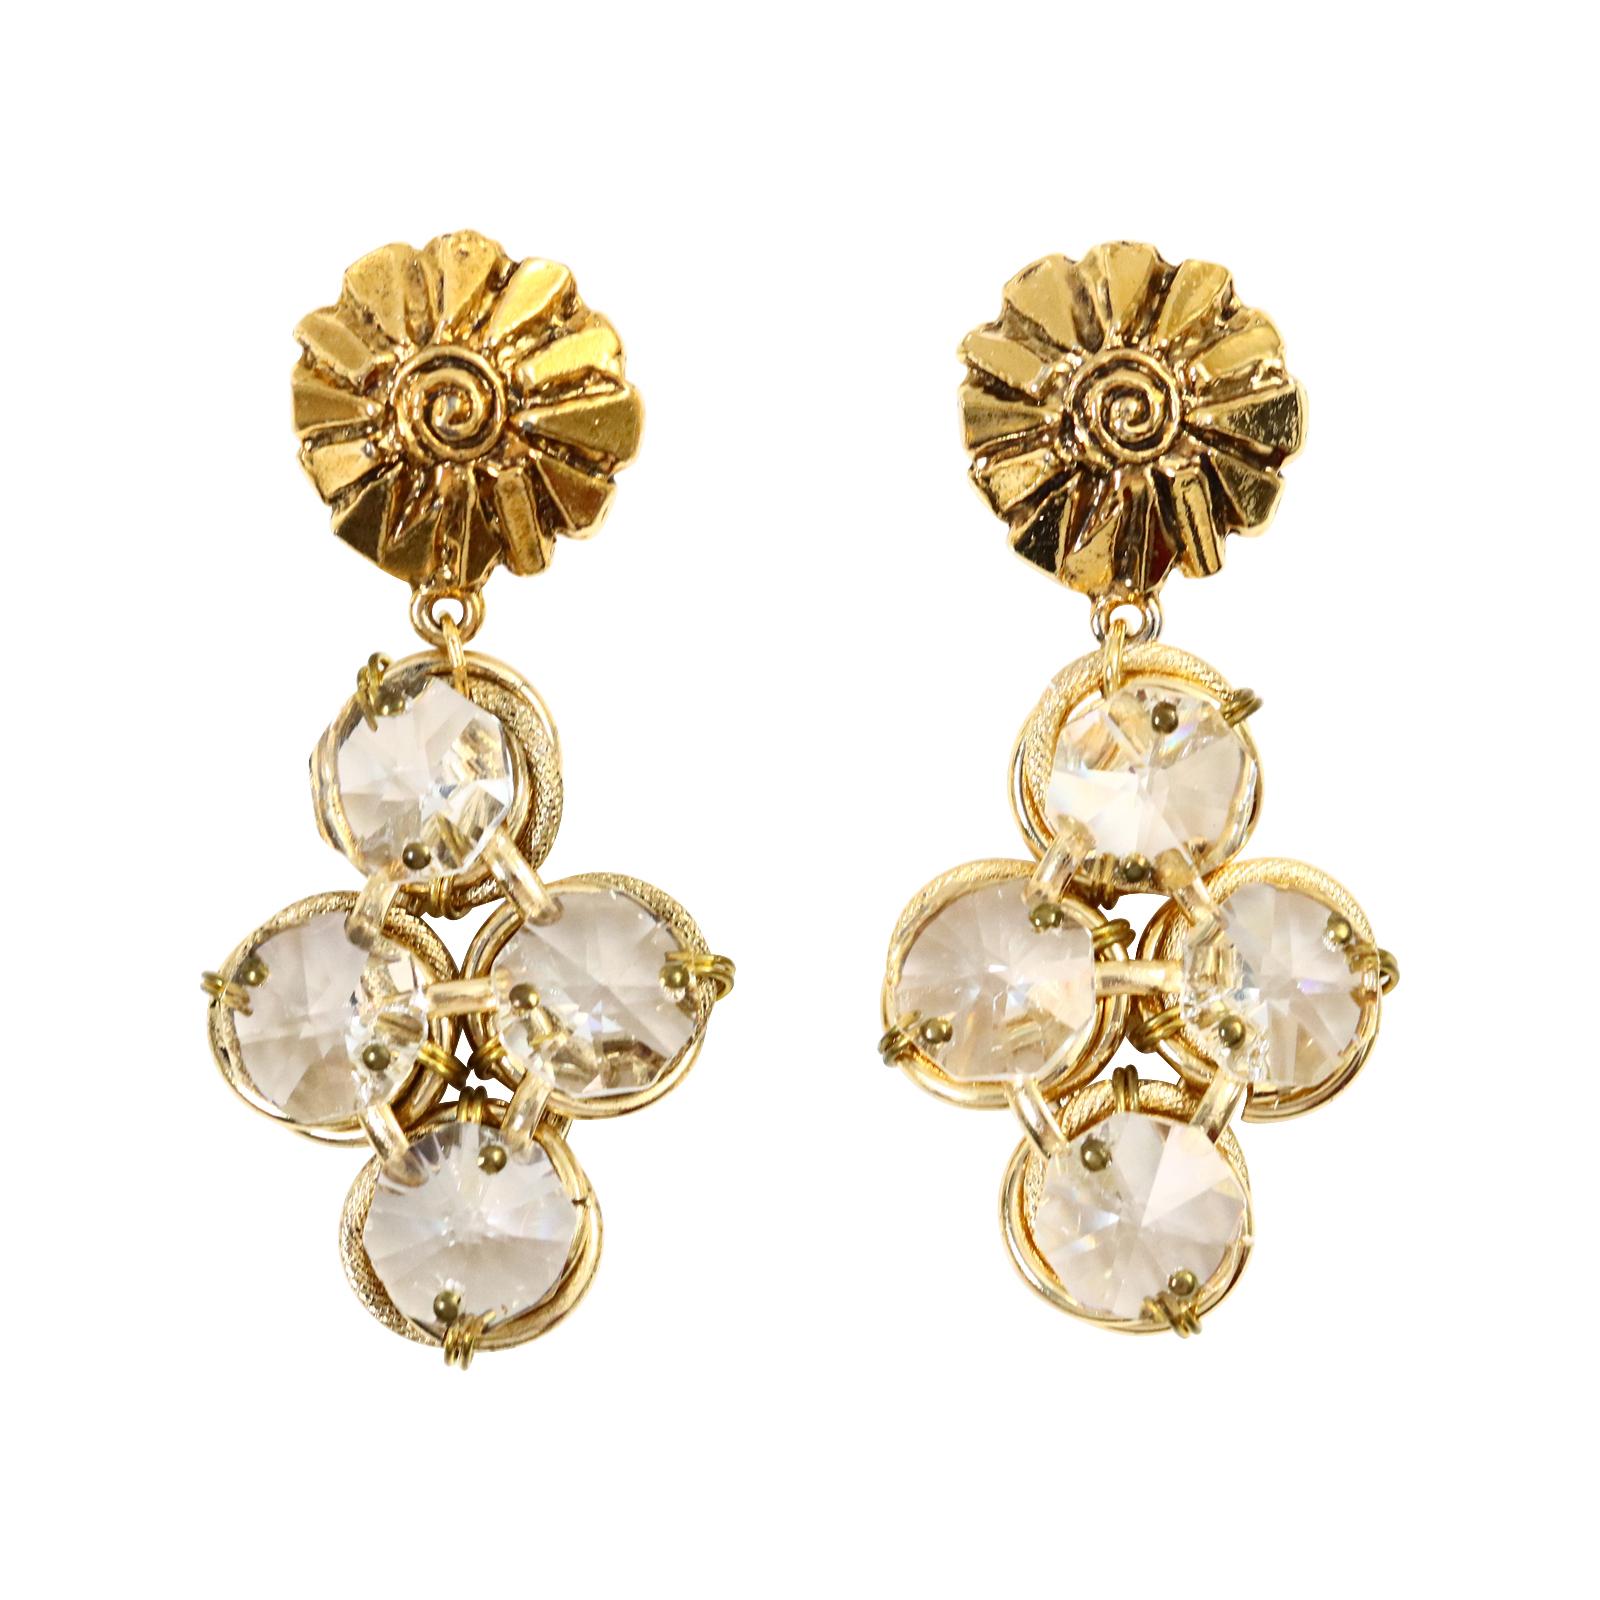 Vintage Poggi Paris Gold-Ton mit großen Kristallen baumelnden Ohrringe CIRCA 1990er Jahre.  Diese spektakulären Ohrringe sind so schick und sehen gleichzeitig so klassisch aus. Die knopfähnliche, goldfarbene Struktur, an der die Kristalle baumeln,